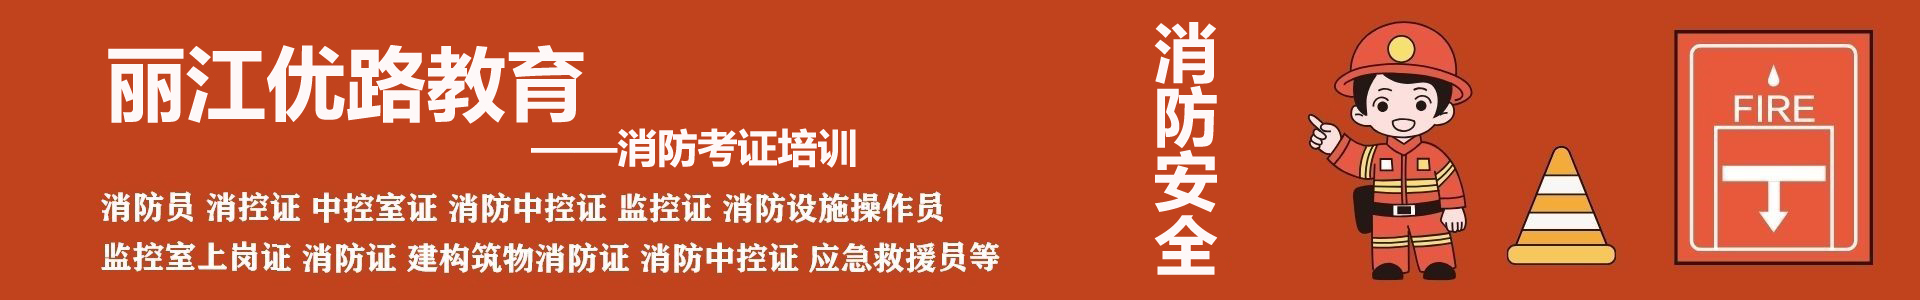 丽江优路消防培训机构首页